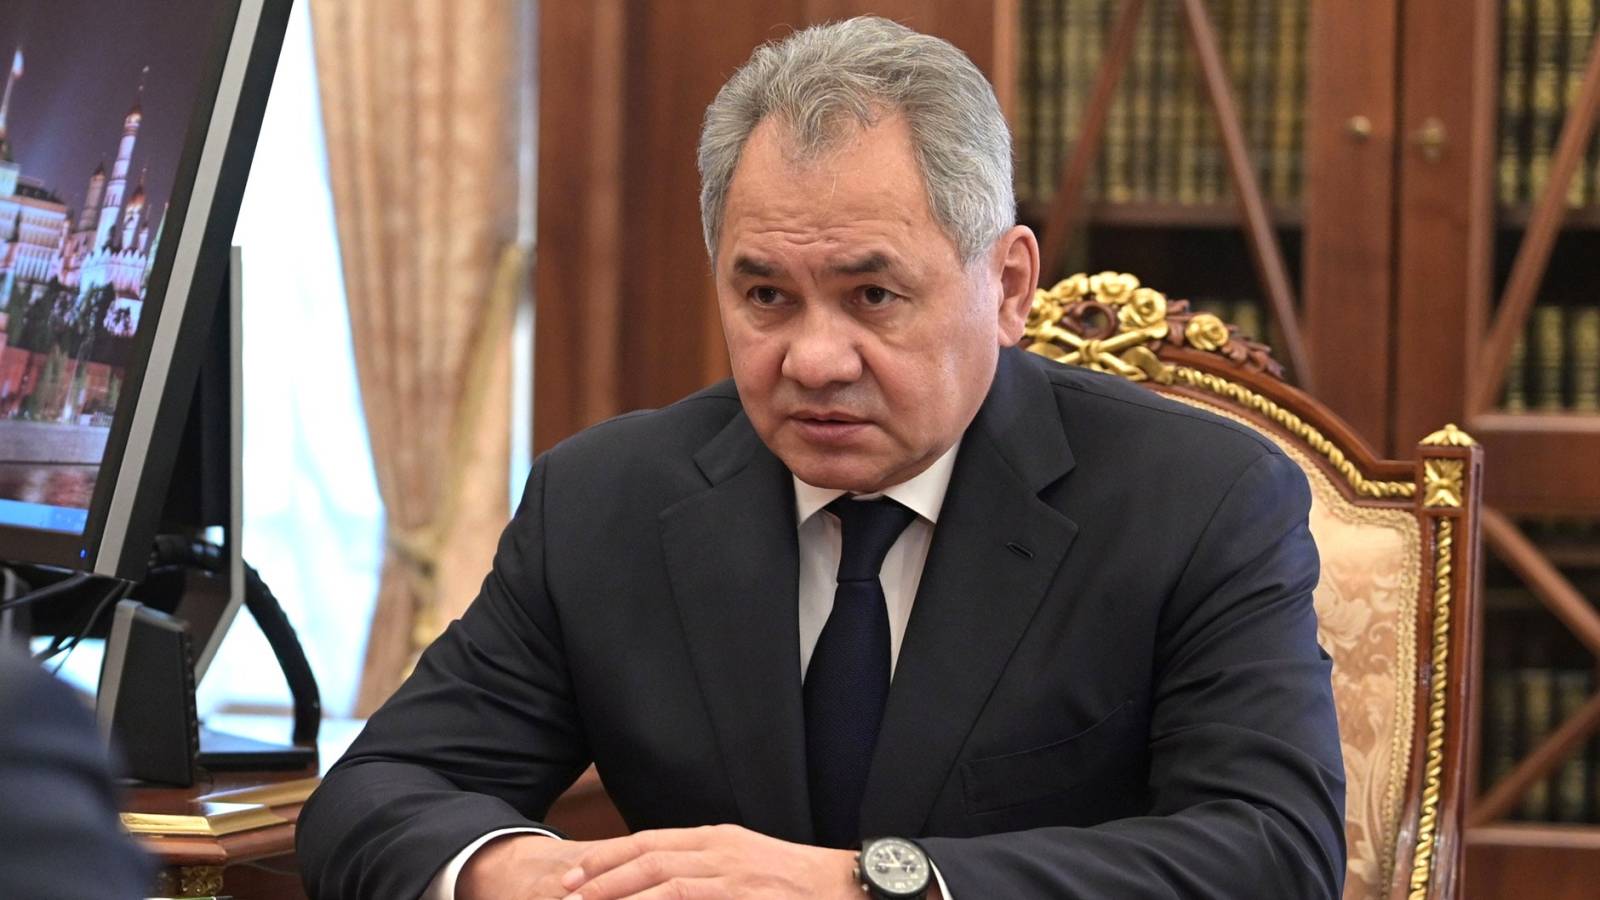 Ministrul Rus Apararii sustine cucerit intreaga regiune Luhansk Ucraina